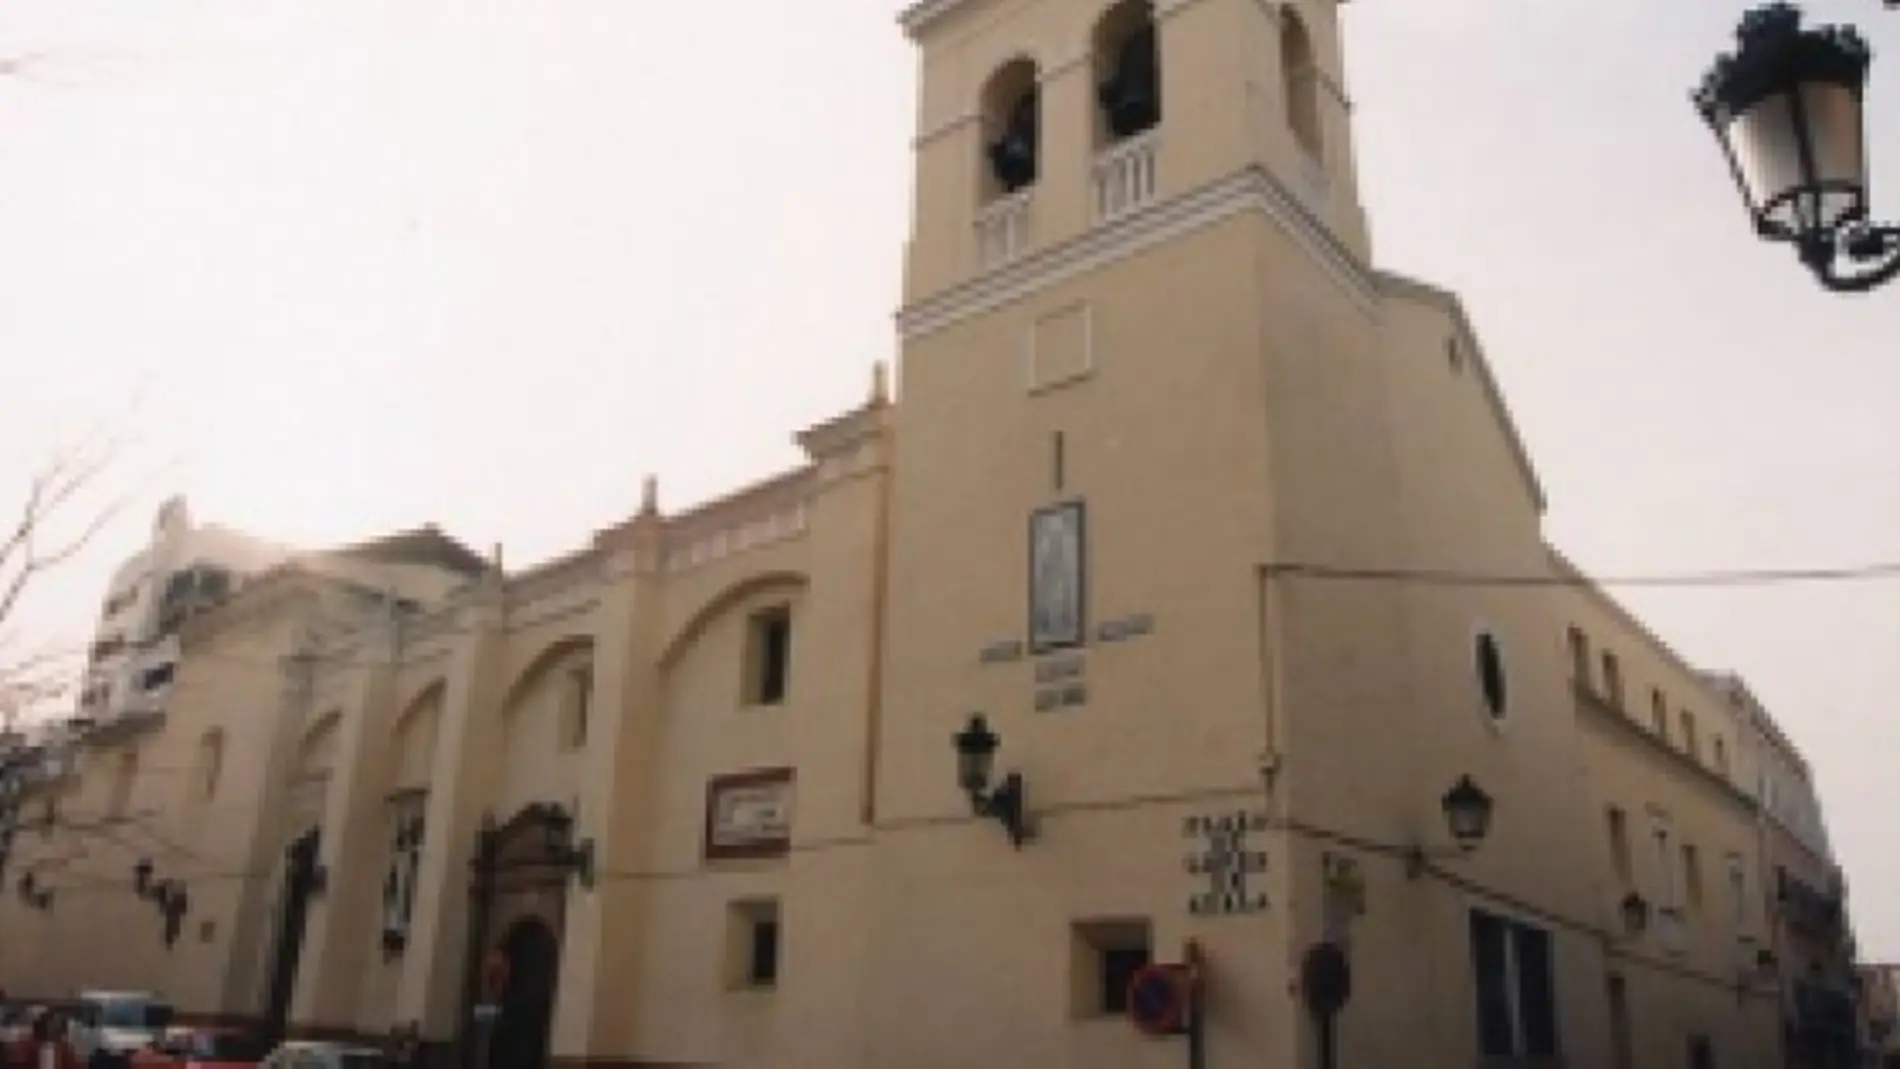 Las hermandades y cofradías de Badajoz rechazan los "actos delictivos" perpetrados en el Convento de Las Descalzas